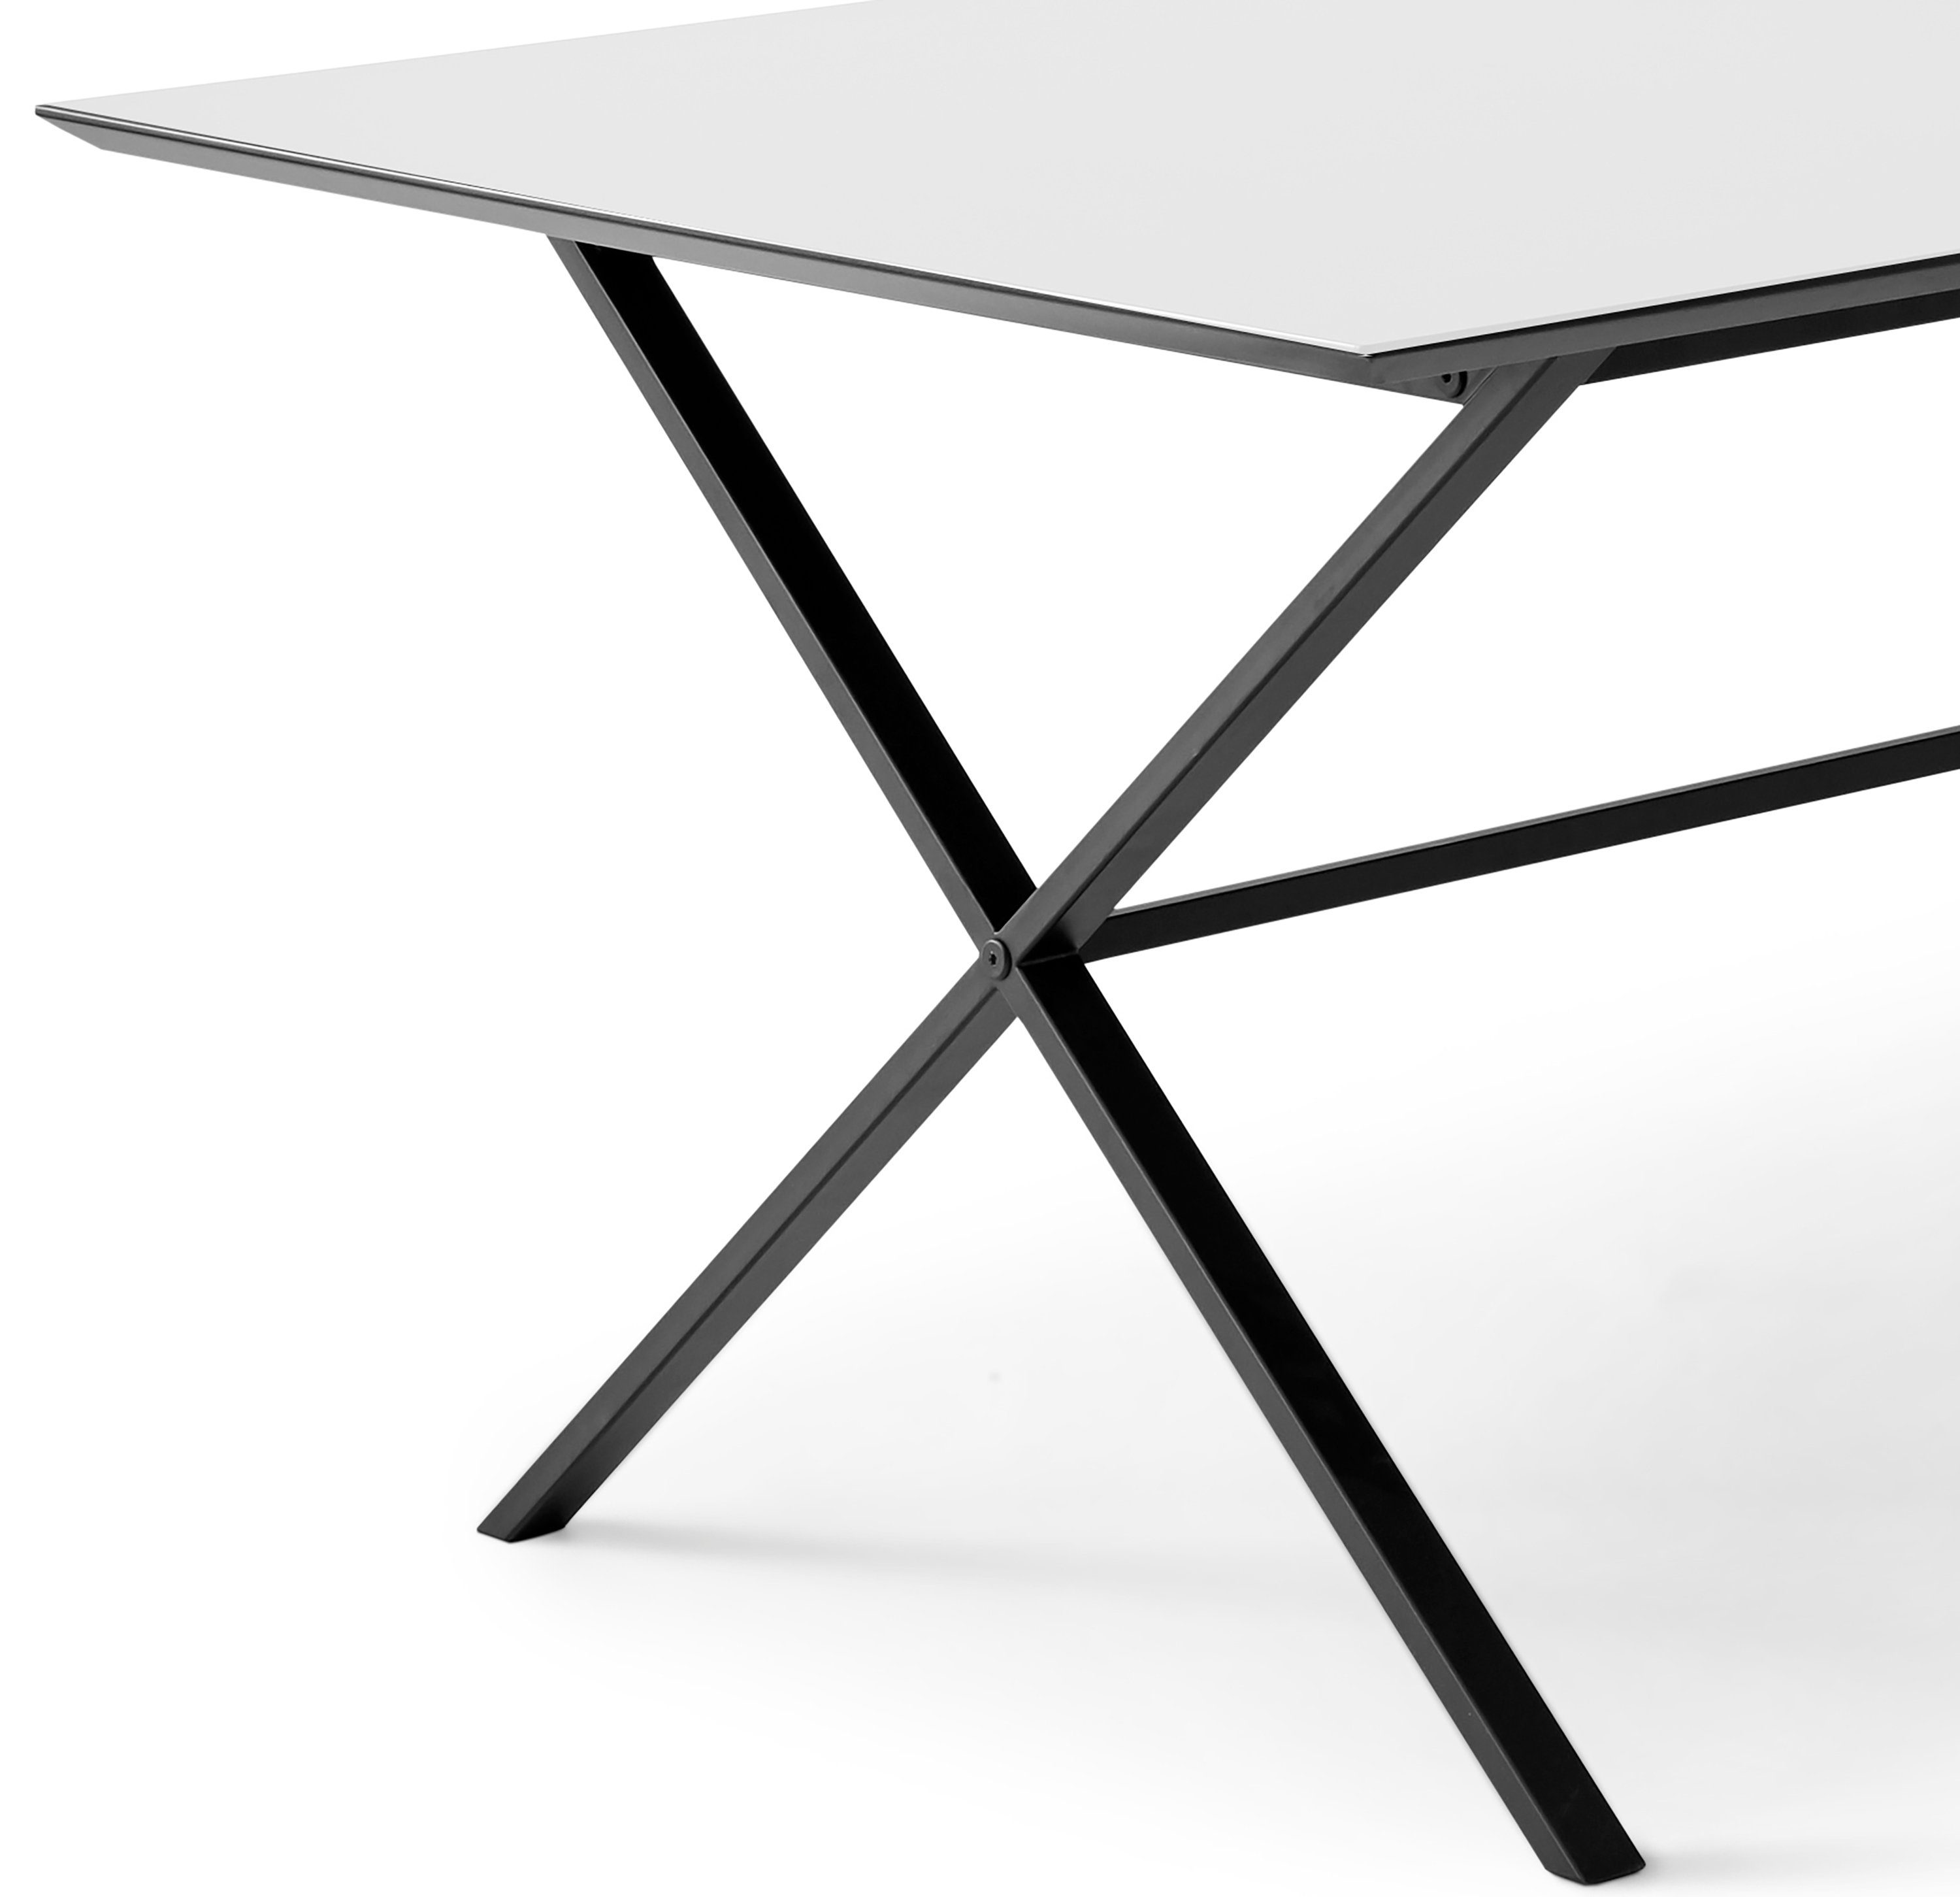 Hammel, Weiß by Furniture rechteckige Tischplatte Esstisch MDF, Meza Hammel Metallgestell gekreuztes